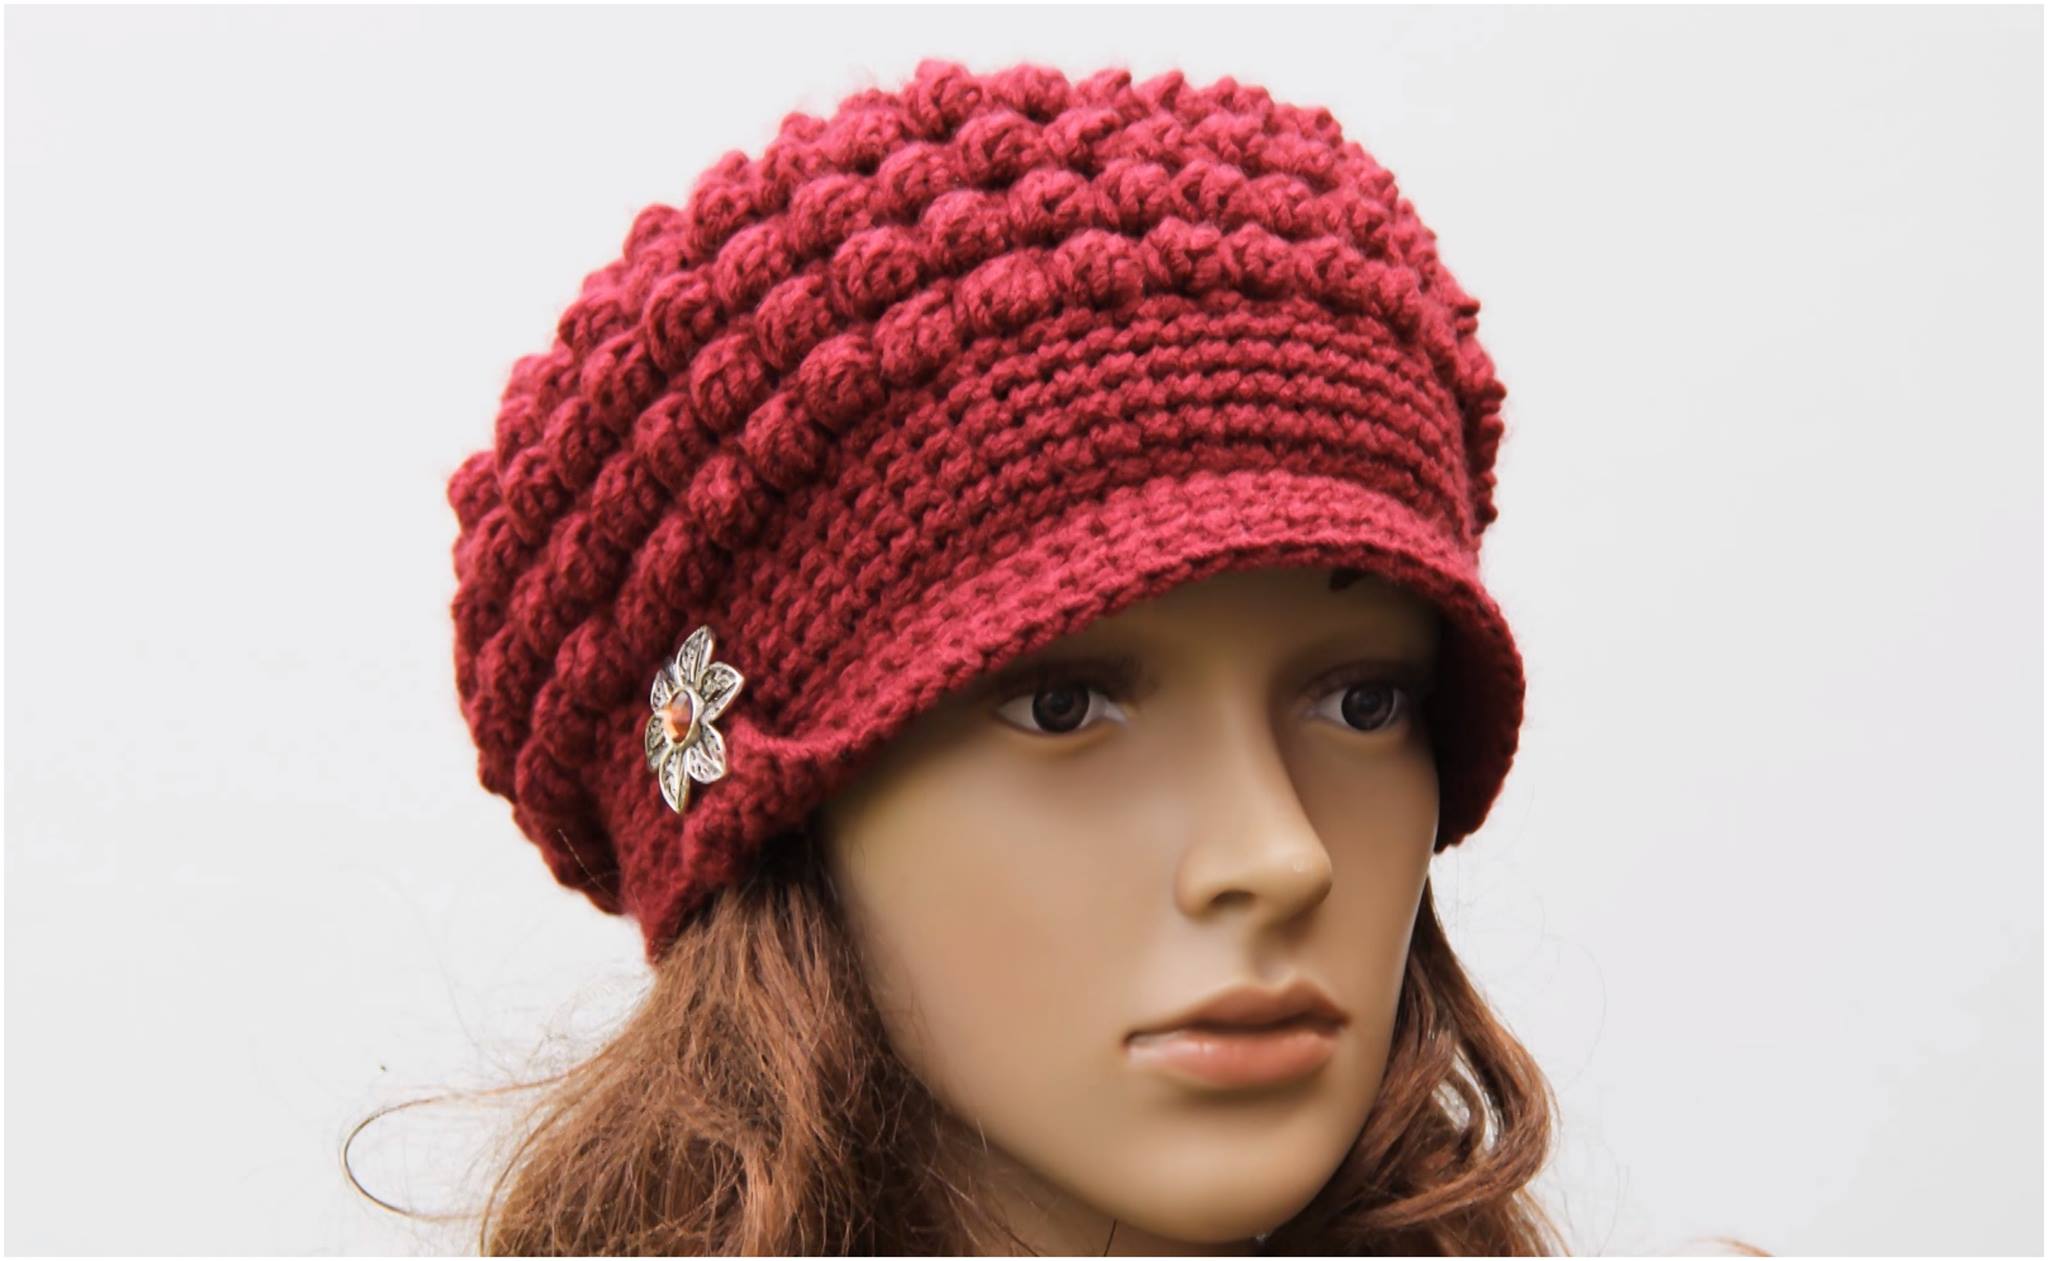 Crochet Brimmed Hat Free Pattern Yarn & Hooks